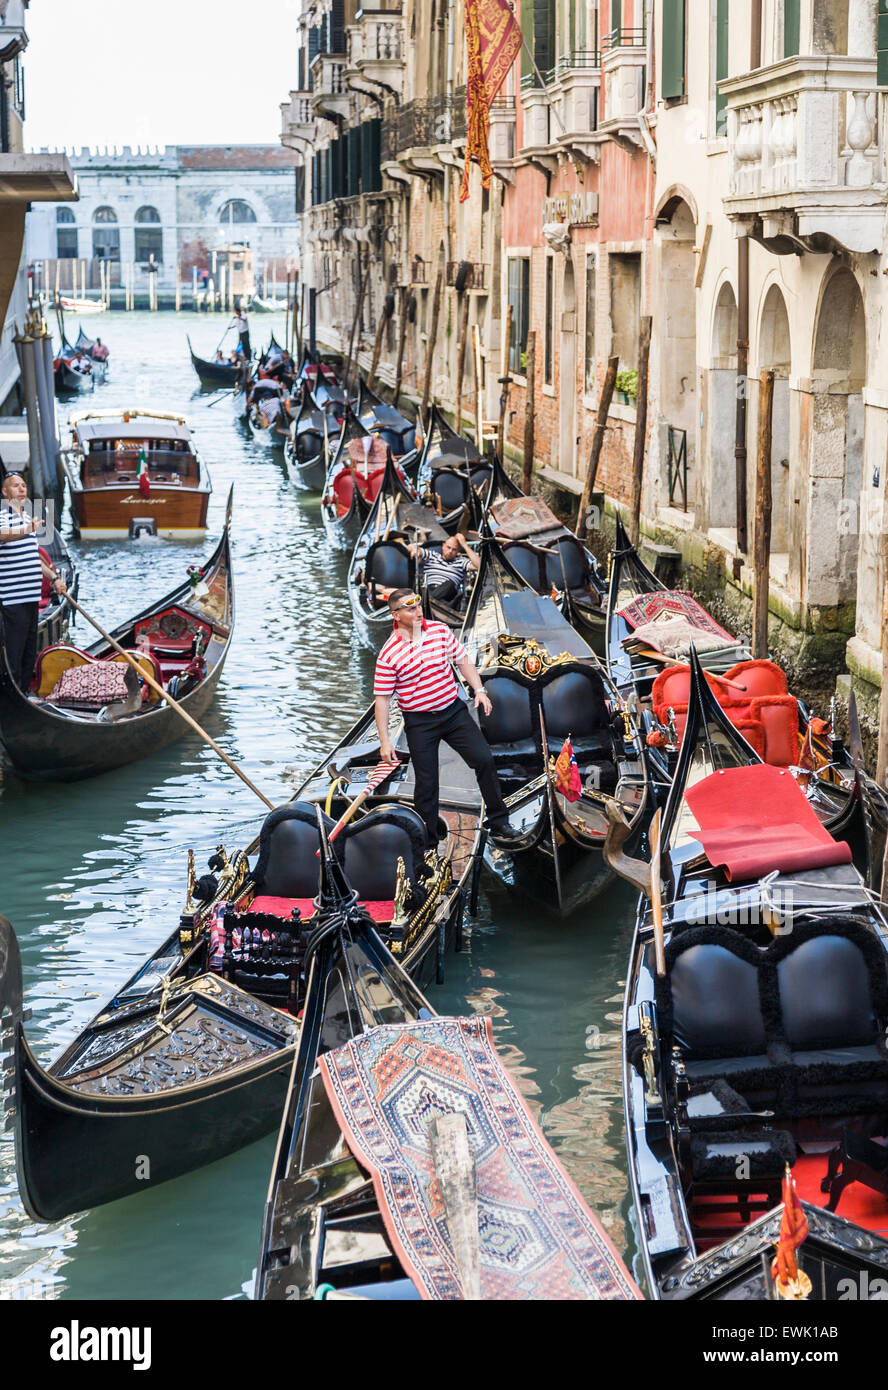 Gondeln vor Anker in einem Seitenkanal in Venedig, Gondoliere im traditionellen gestreiften Hemd wartet auf touristischen Kunden Stockfoto